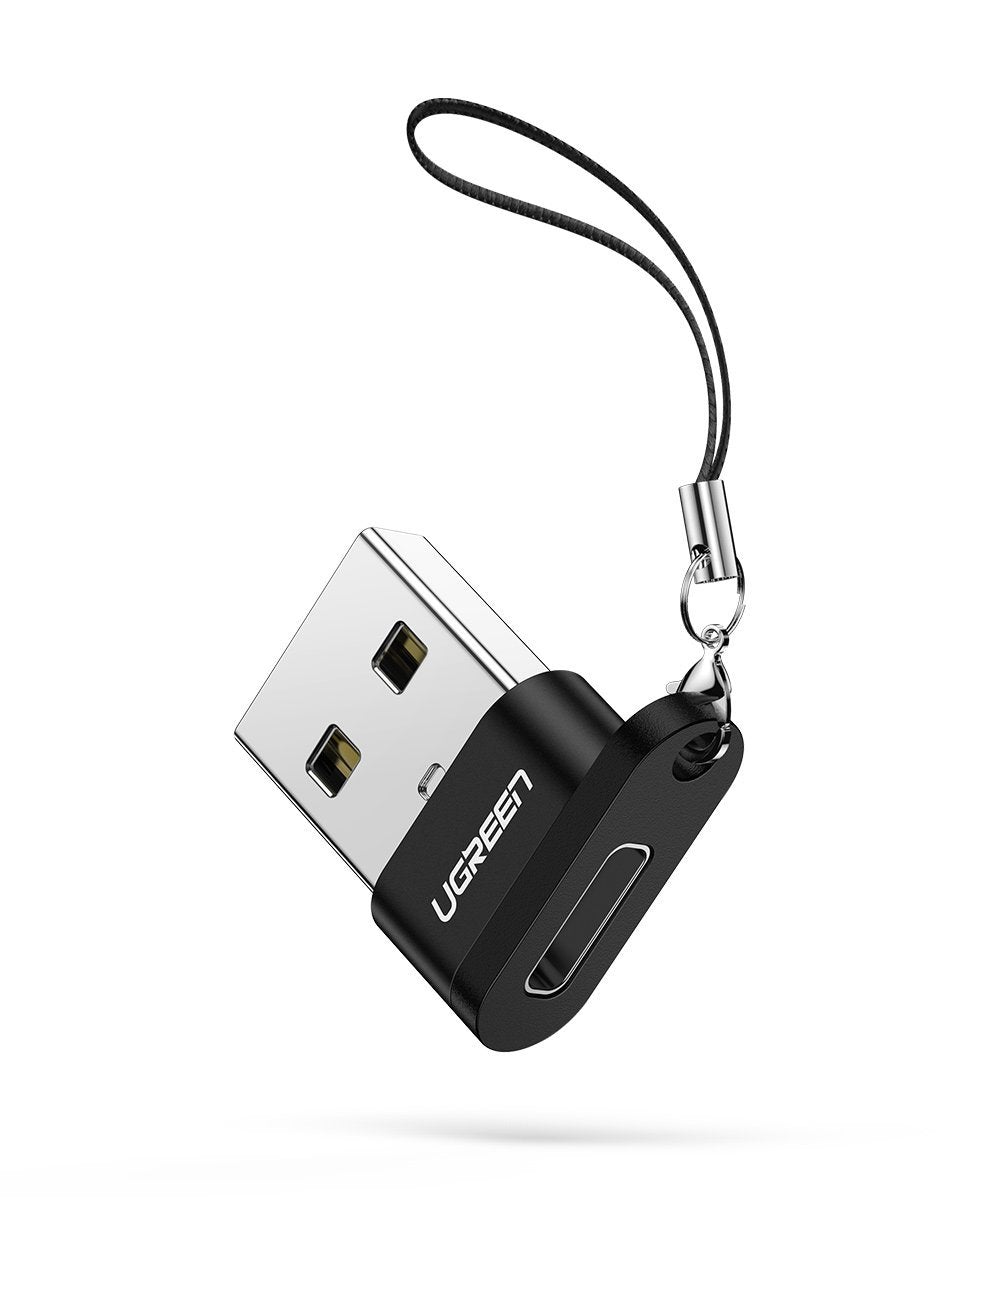 Đầu chuyển USB 2.0 sang Type-C UGREEN 50568 - Tốc độ truyền 480Mbps - Thiết kế nhỏ gọn, kèm móc treo tiện lợi – Ugreen Việt Nam